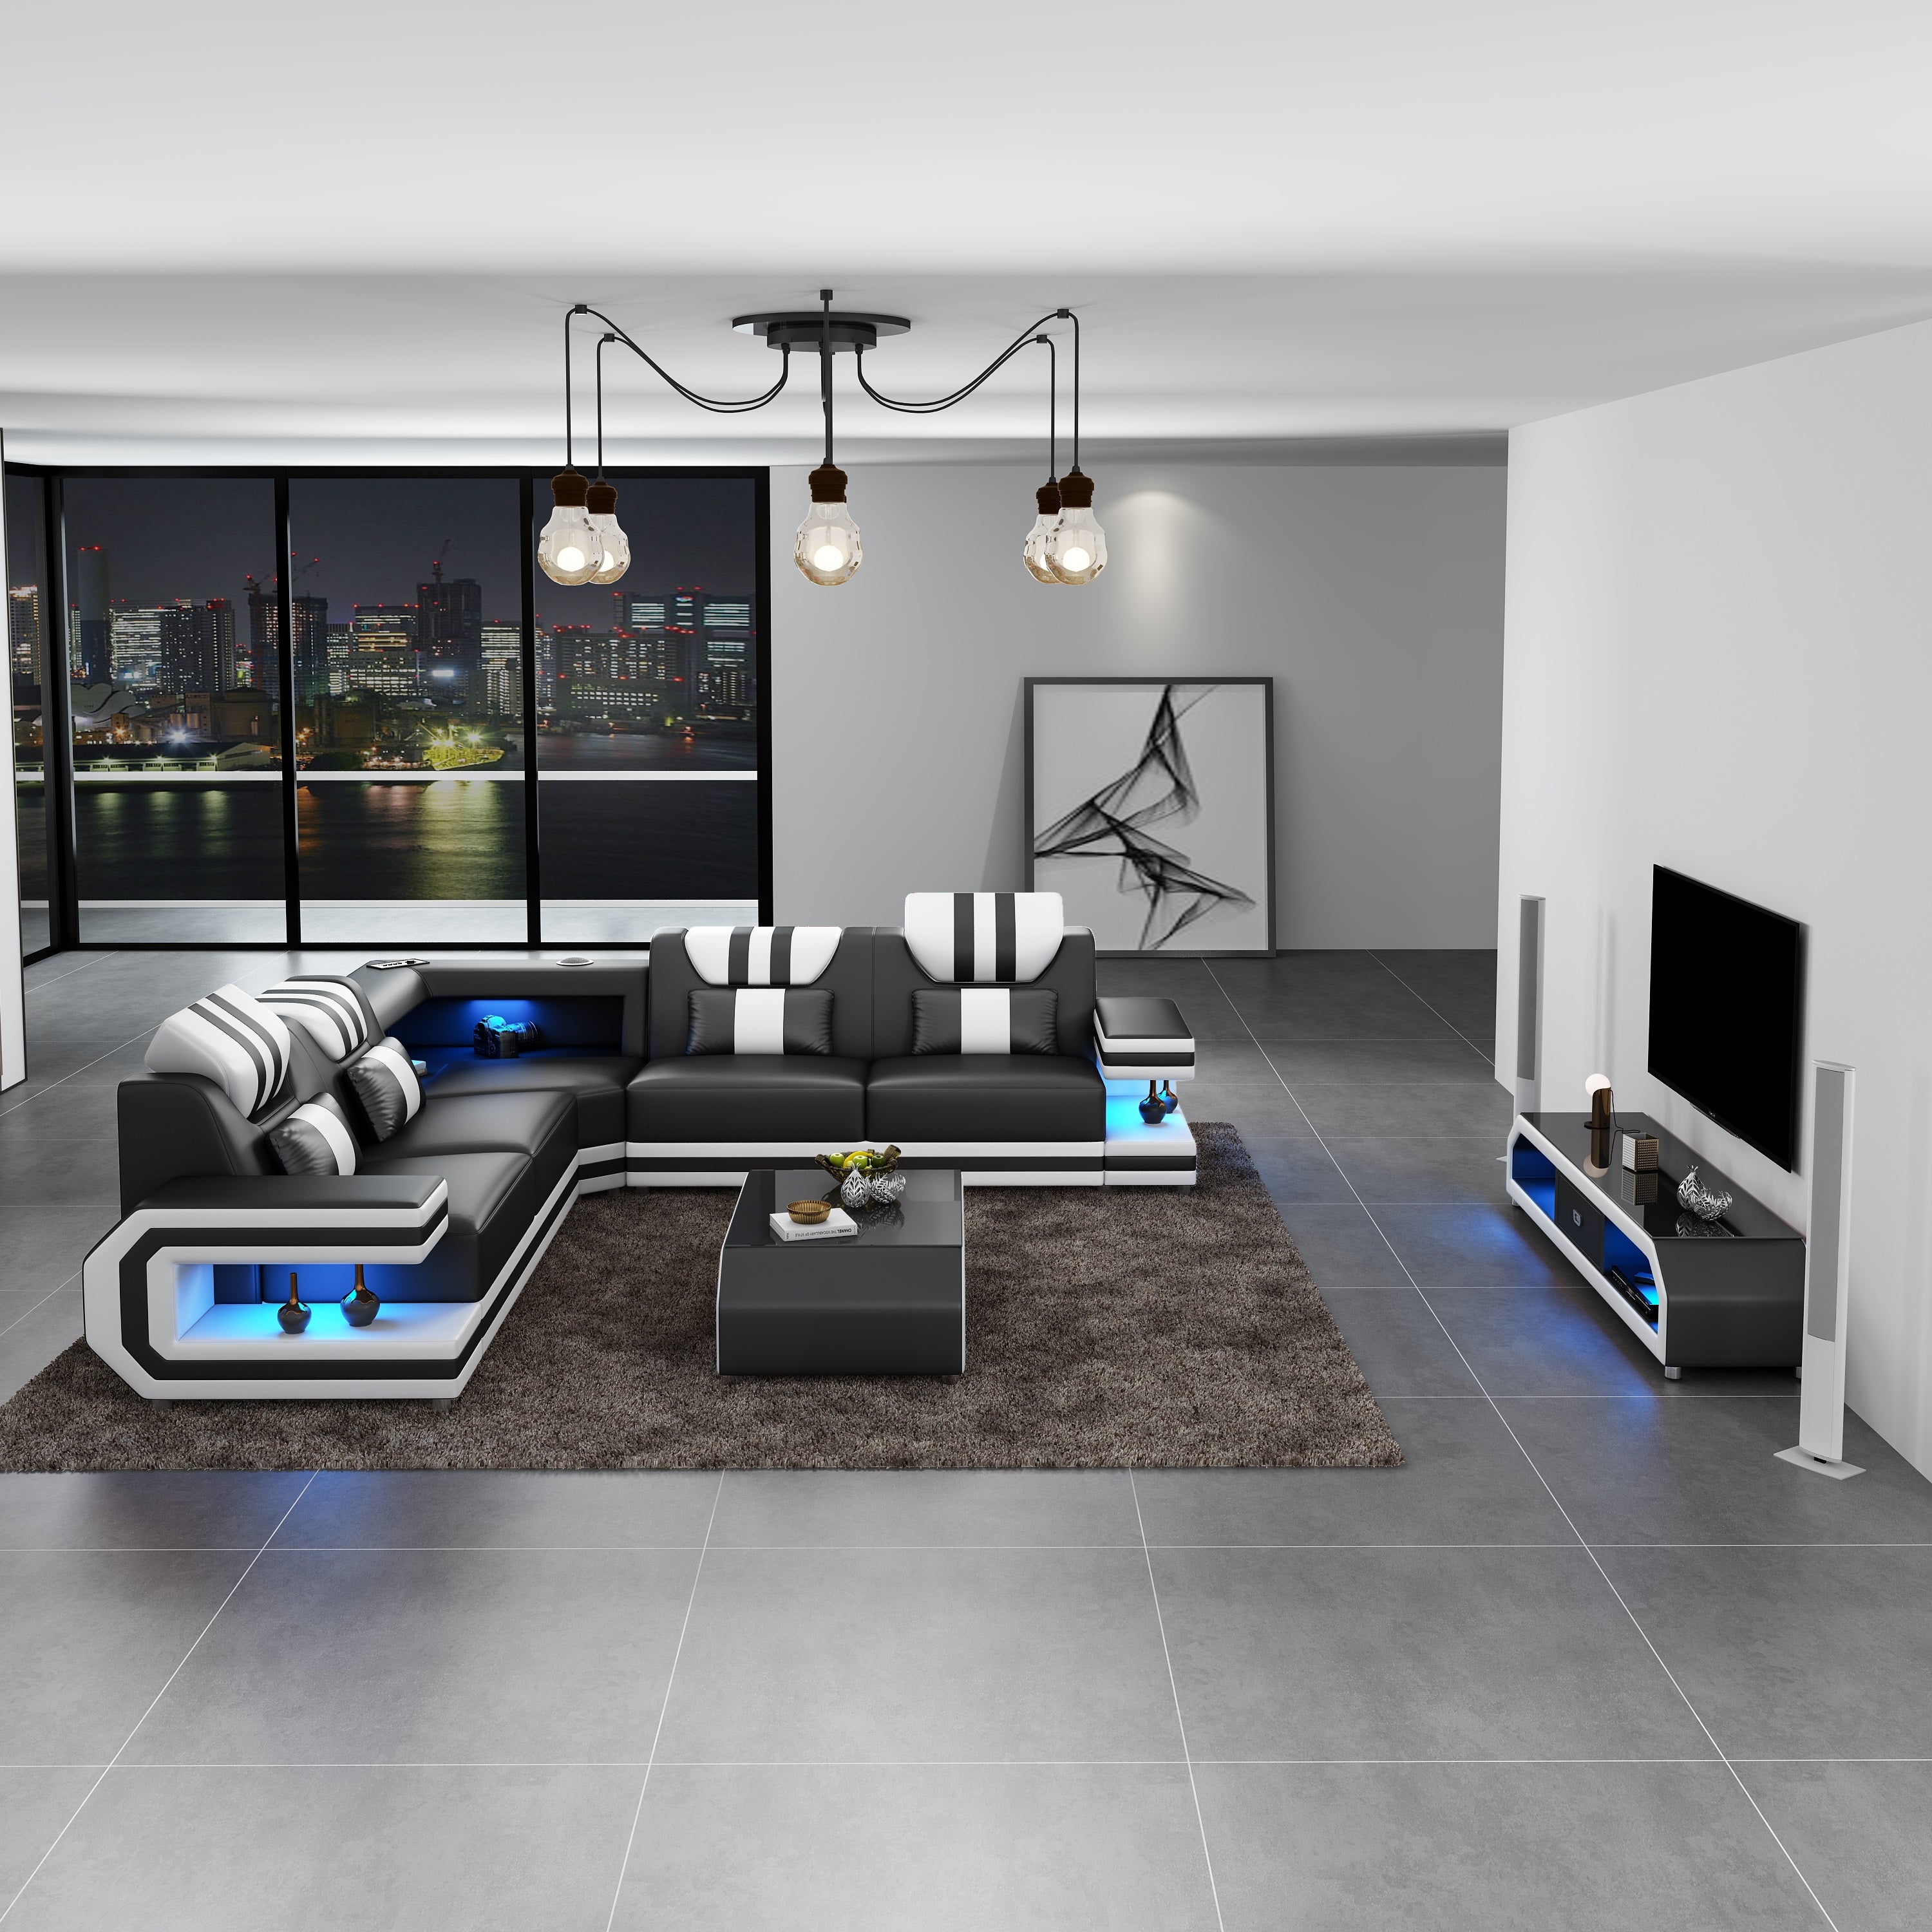 European Furniture - Lightsaber LED Sectional Black White Italian Leather - LED-87770-BW - New Star Living